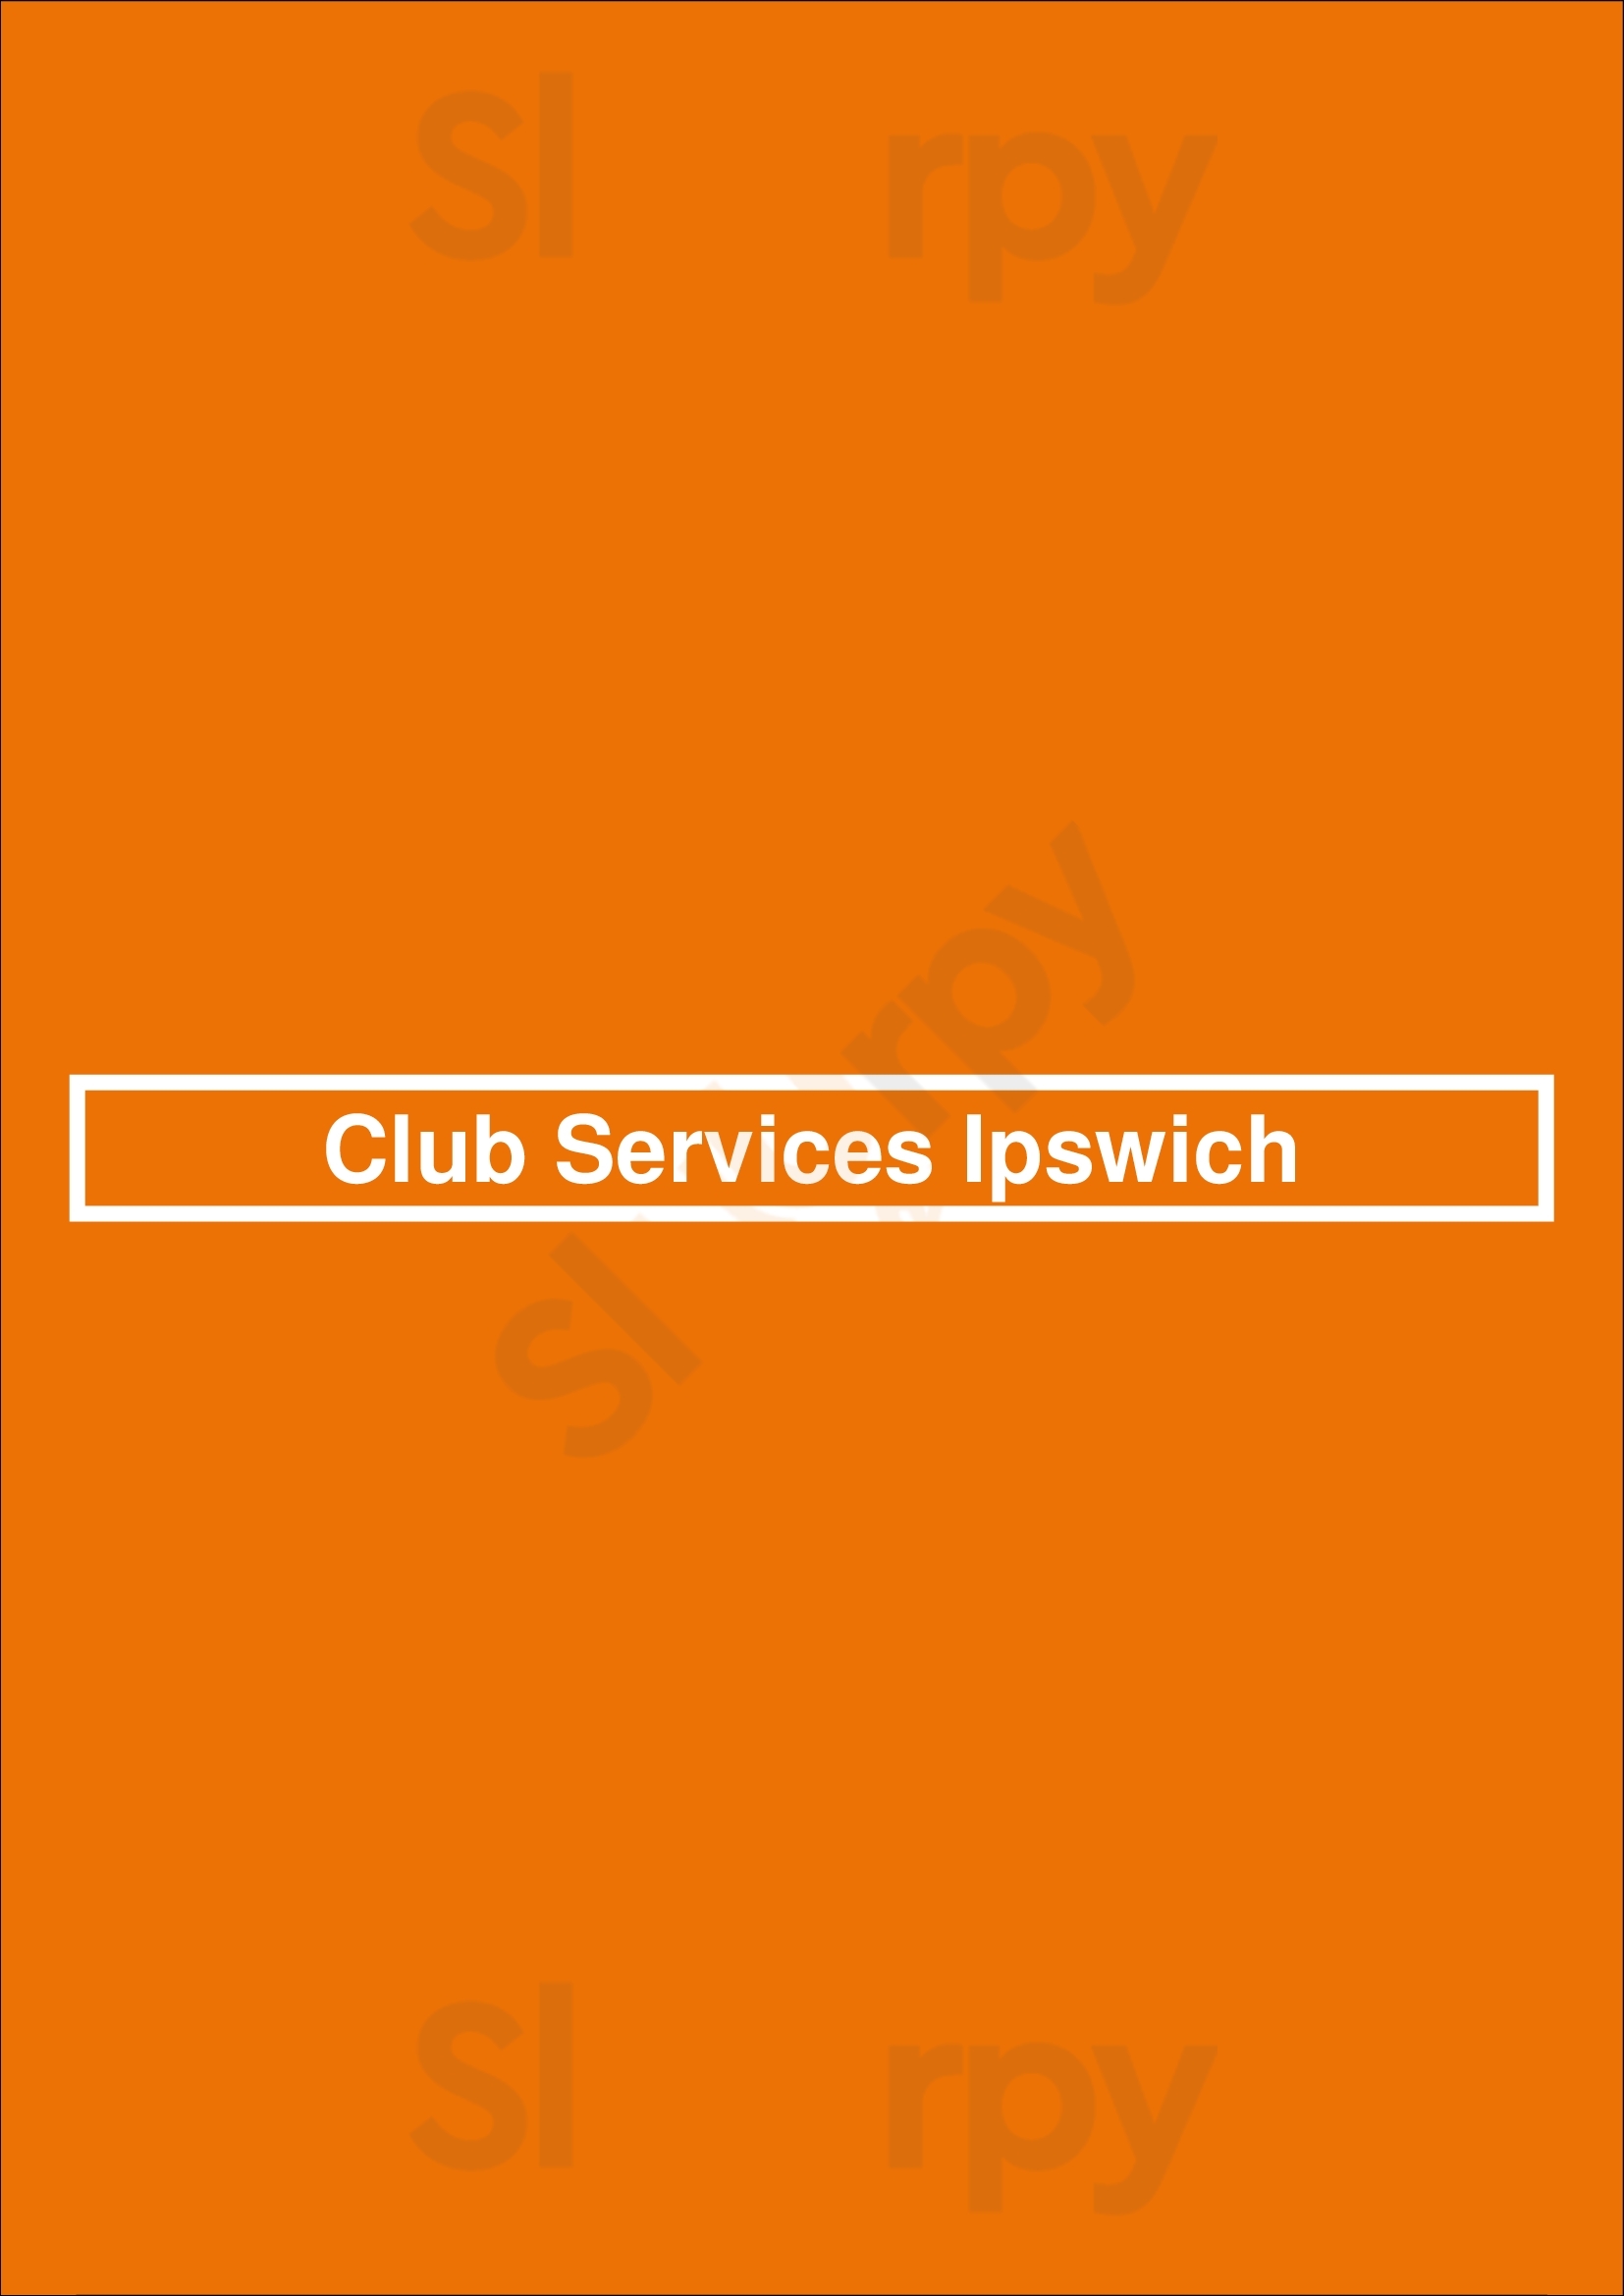 Club Services Ipswich Ipswich Menu - 1